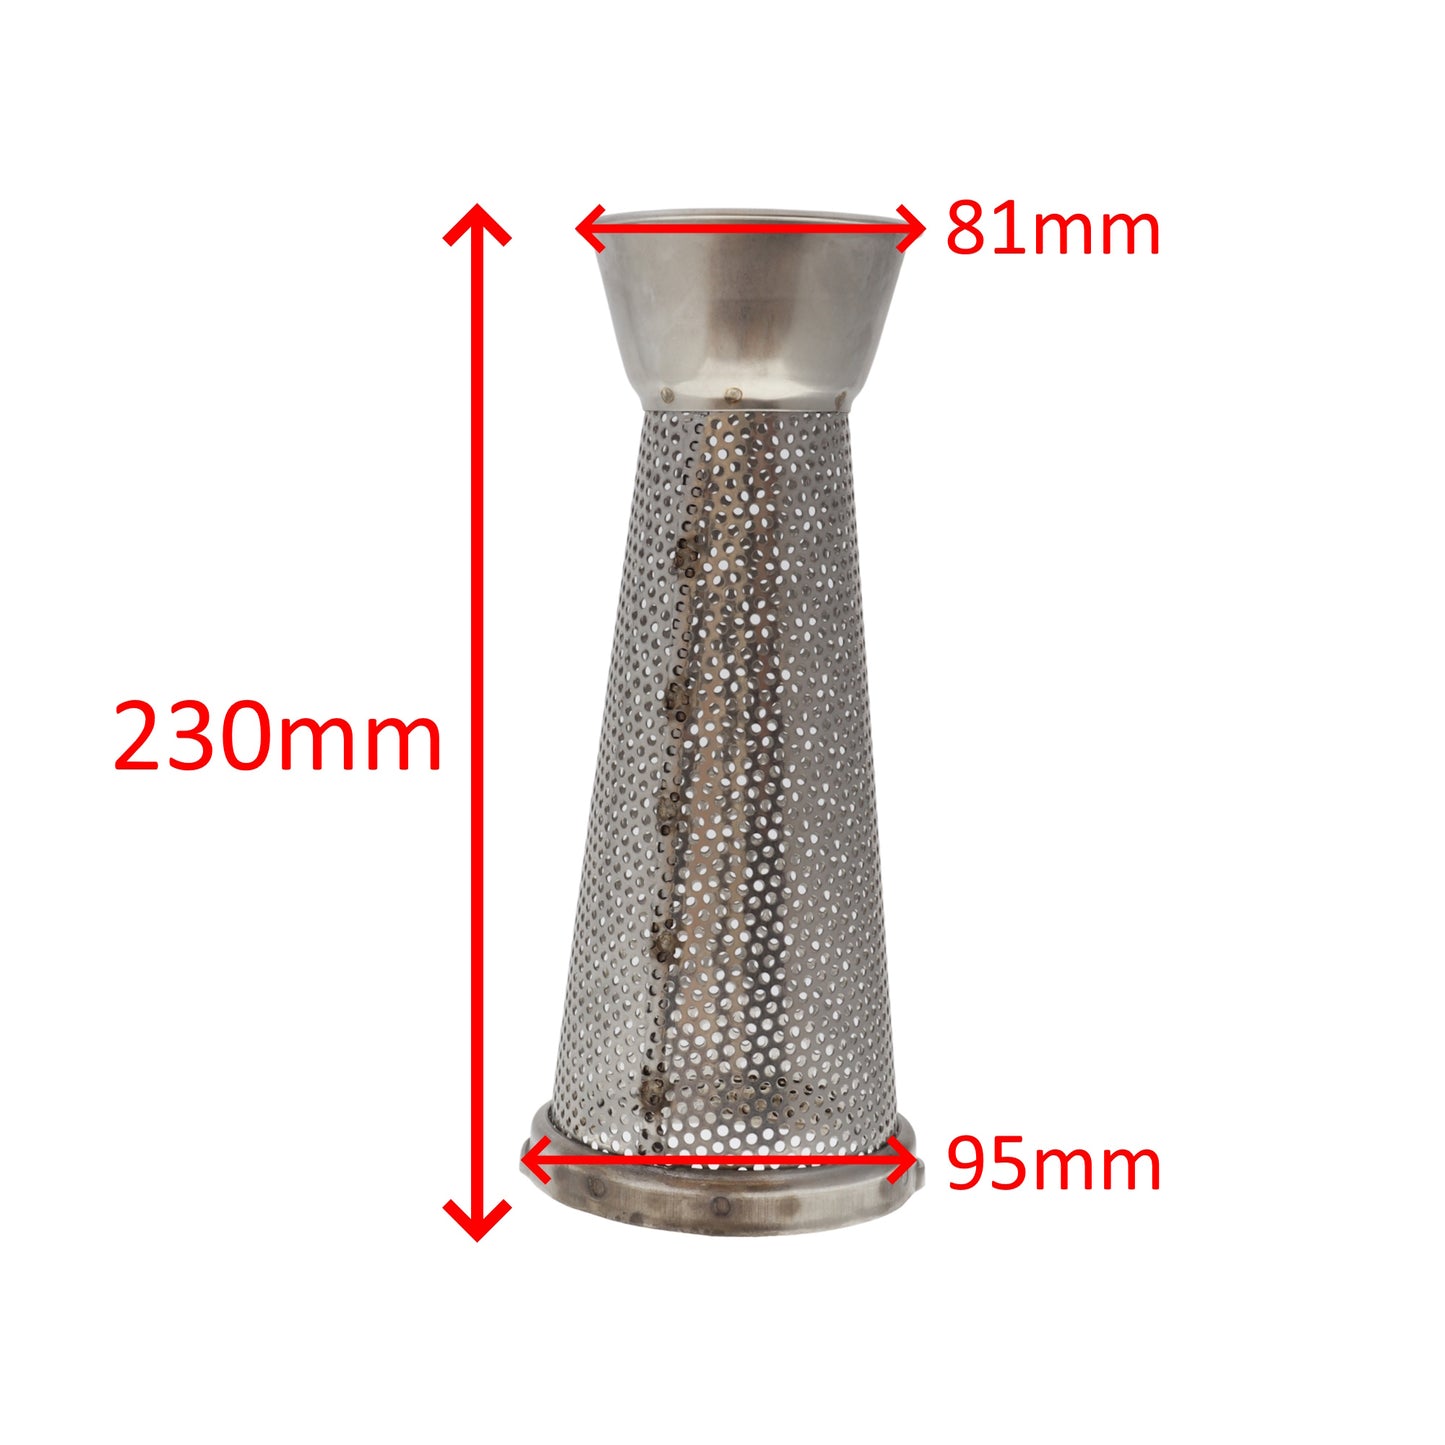 Reber cono filtro inox n. 5 fori standard 1,5mm passapomodoro spremipomodoro